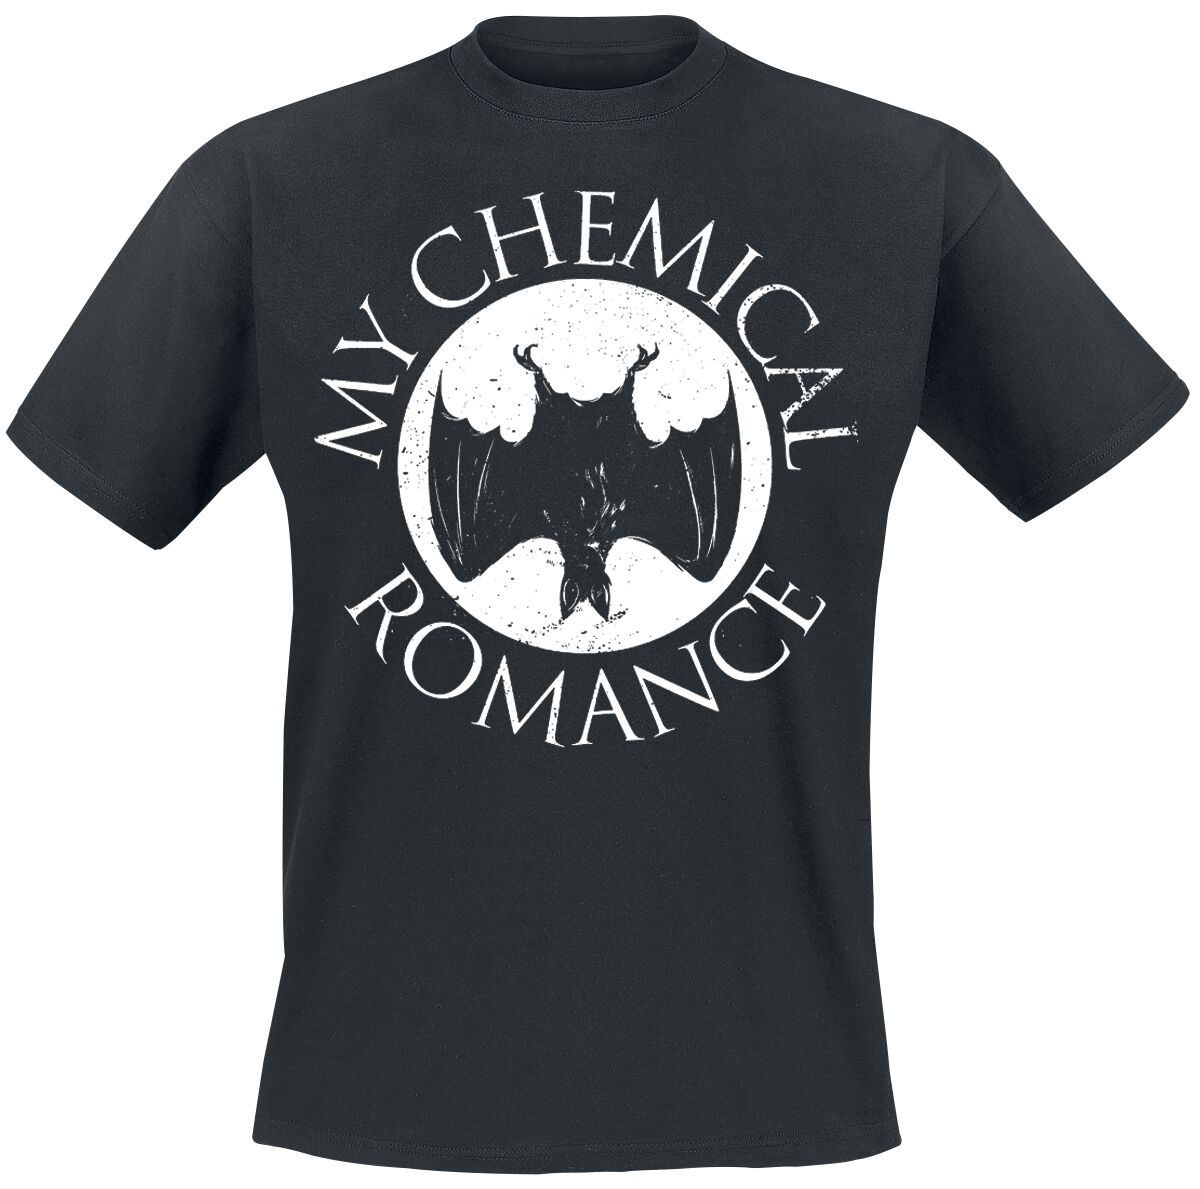 My Chemical Romance T-Shirt - Bat - S bis XXL - für Männer - Größe L - schwarz  - EMP exklusives Merchandise!